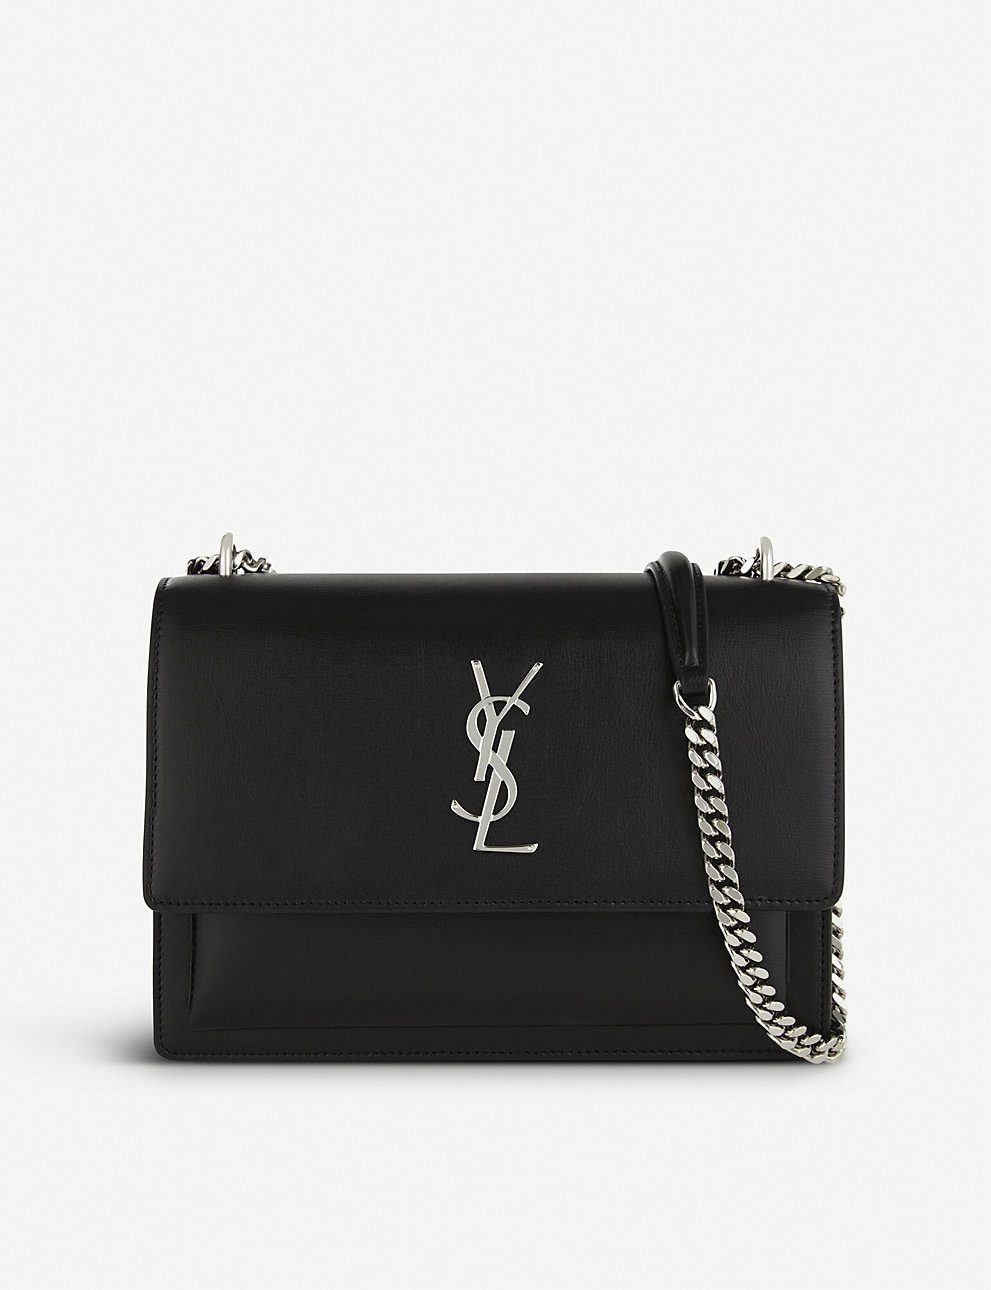 saint sunset medium læder taske sort – Top kvalitet Yves Laurent tasker Shop